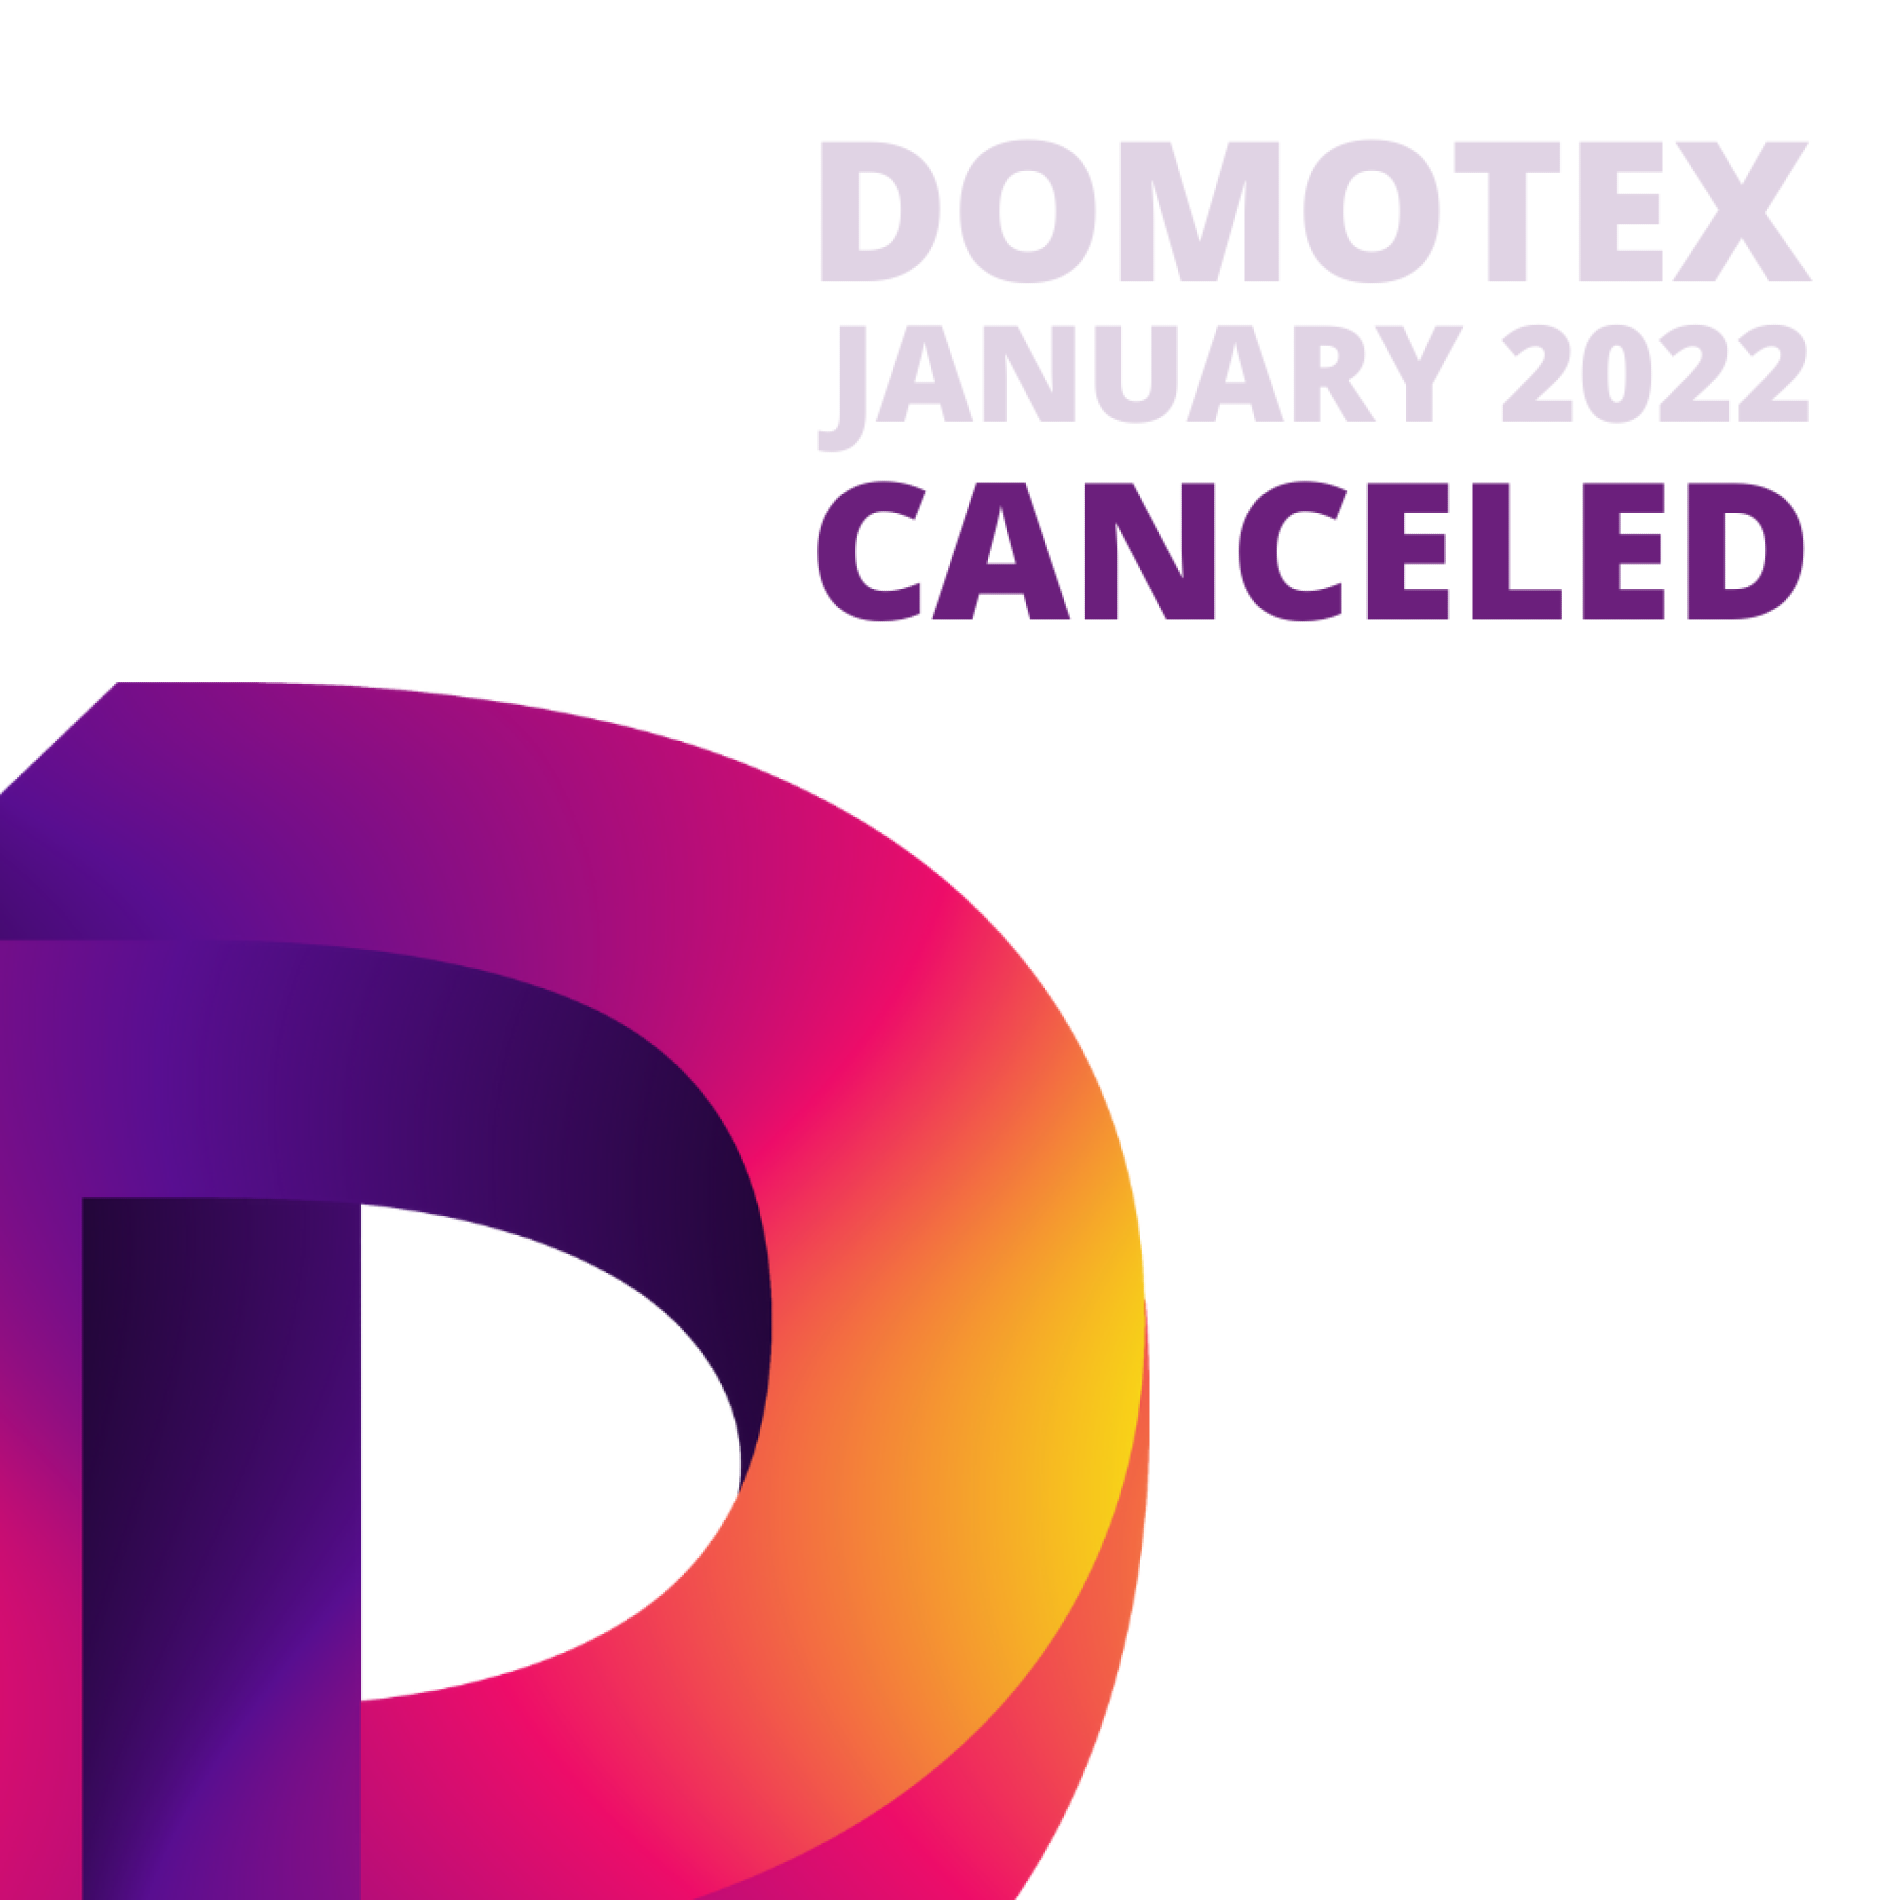 ‘We vechten al tot het einde samen met de exposerende bedrijven voor DOMOTEX en 